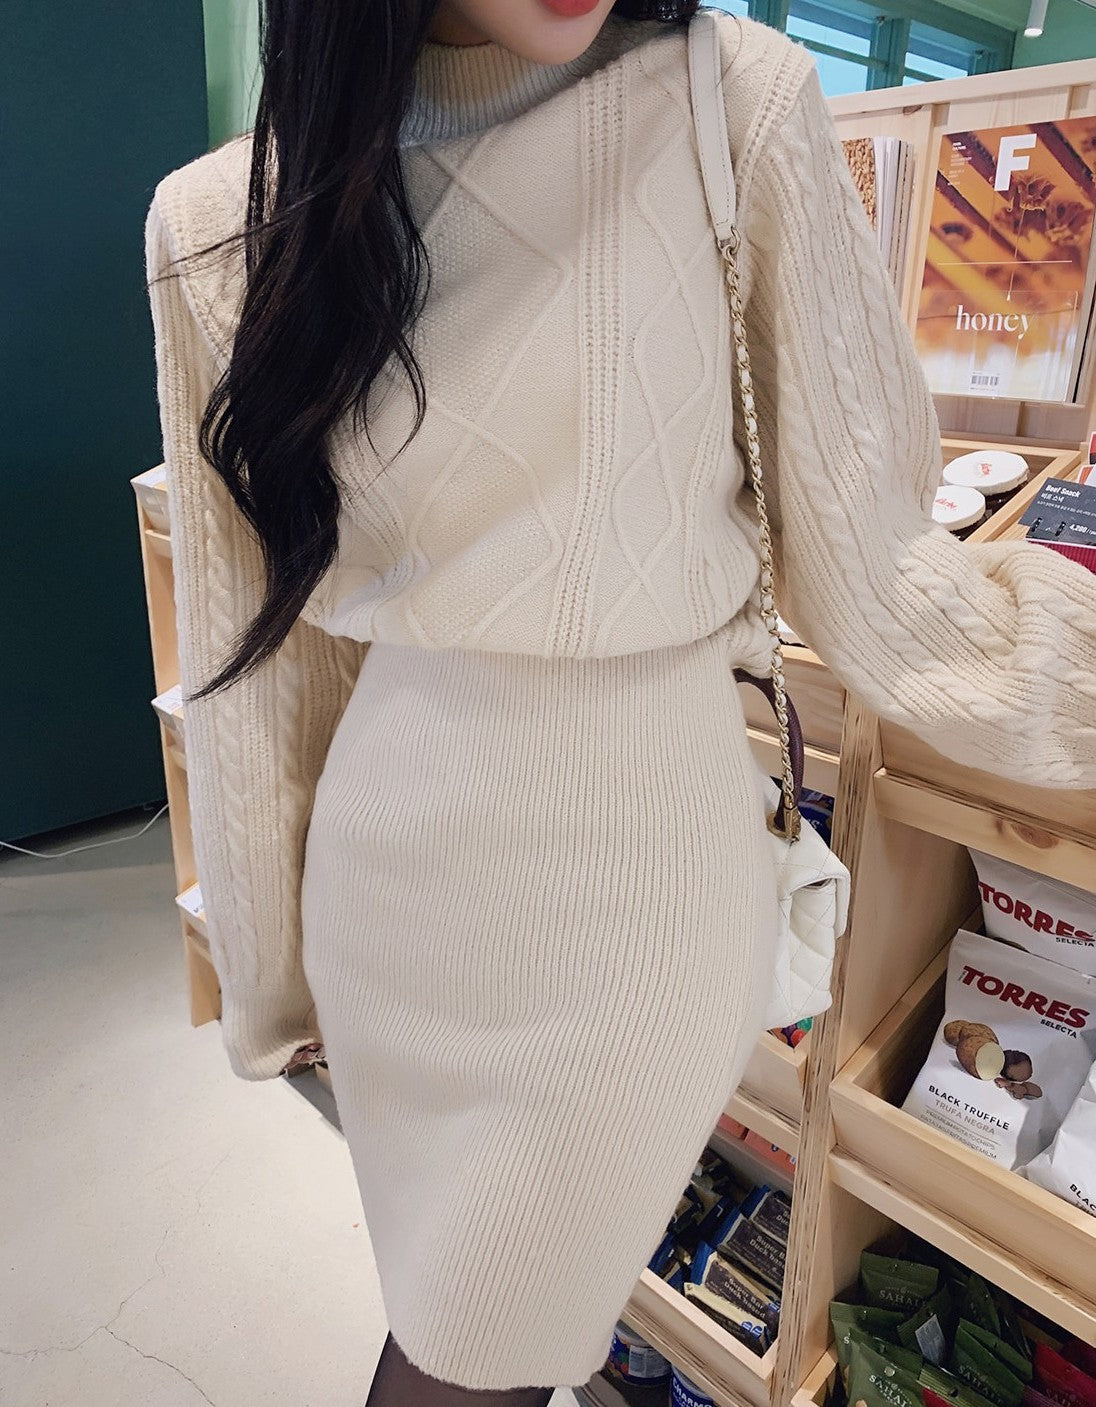 ハイネックニット&ミニスカートワンピ 4897 - 韓国ファッション通販